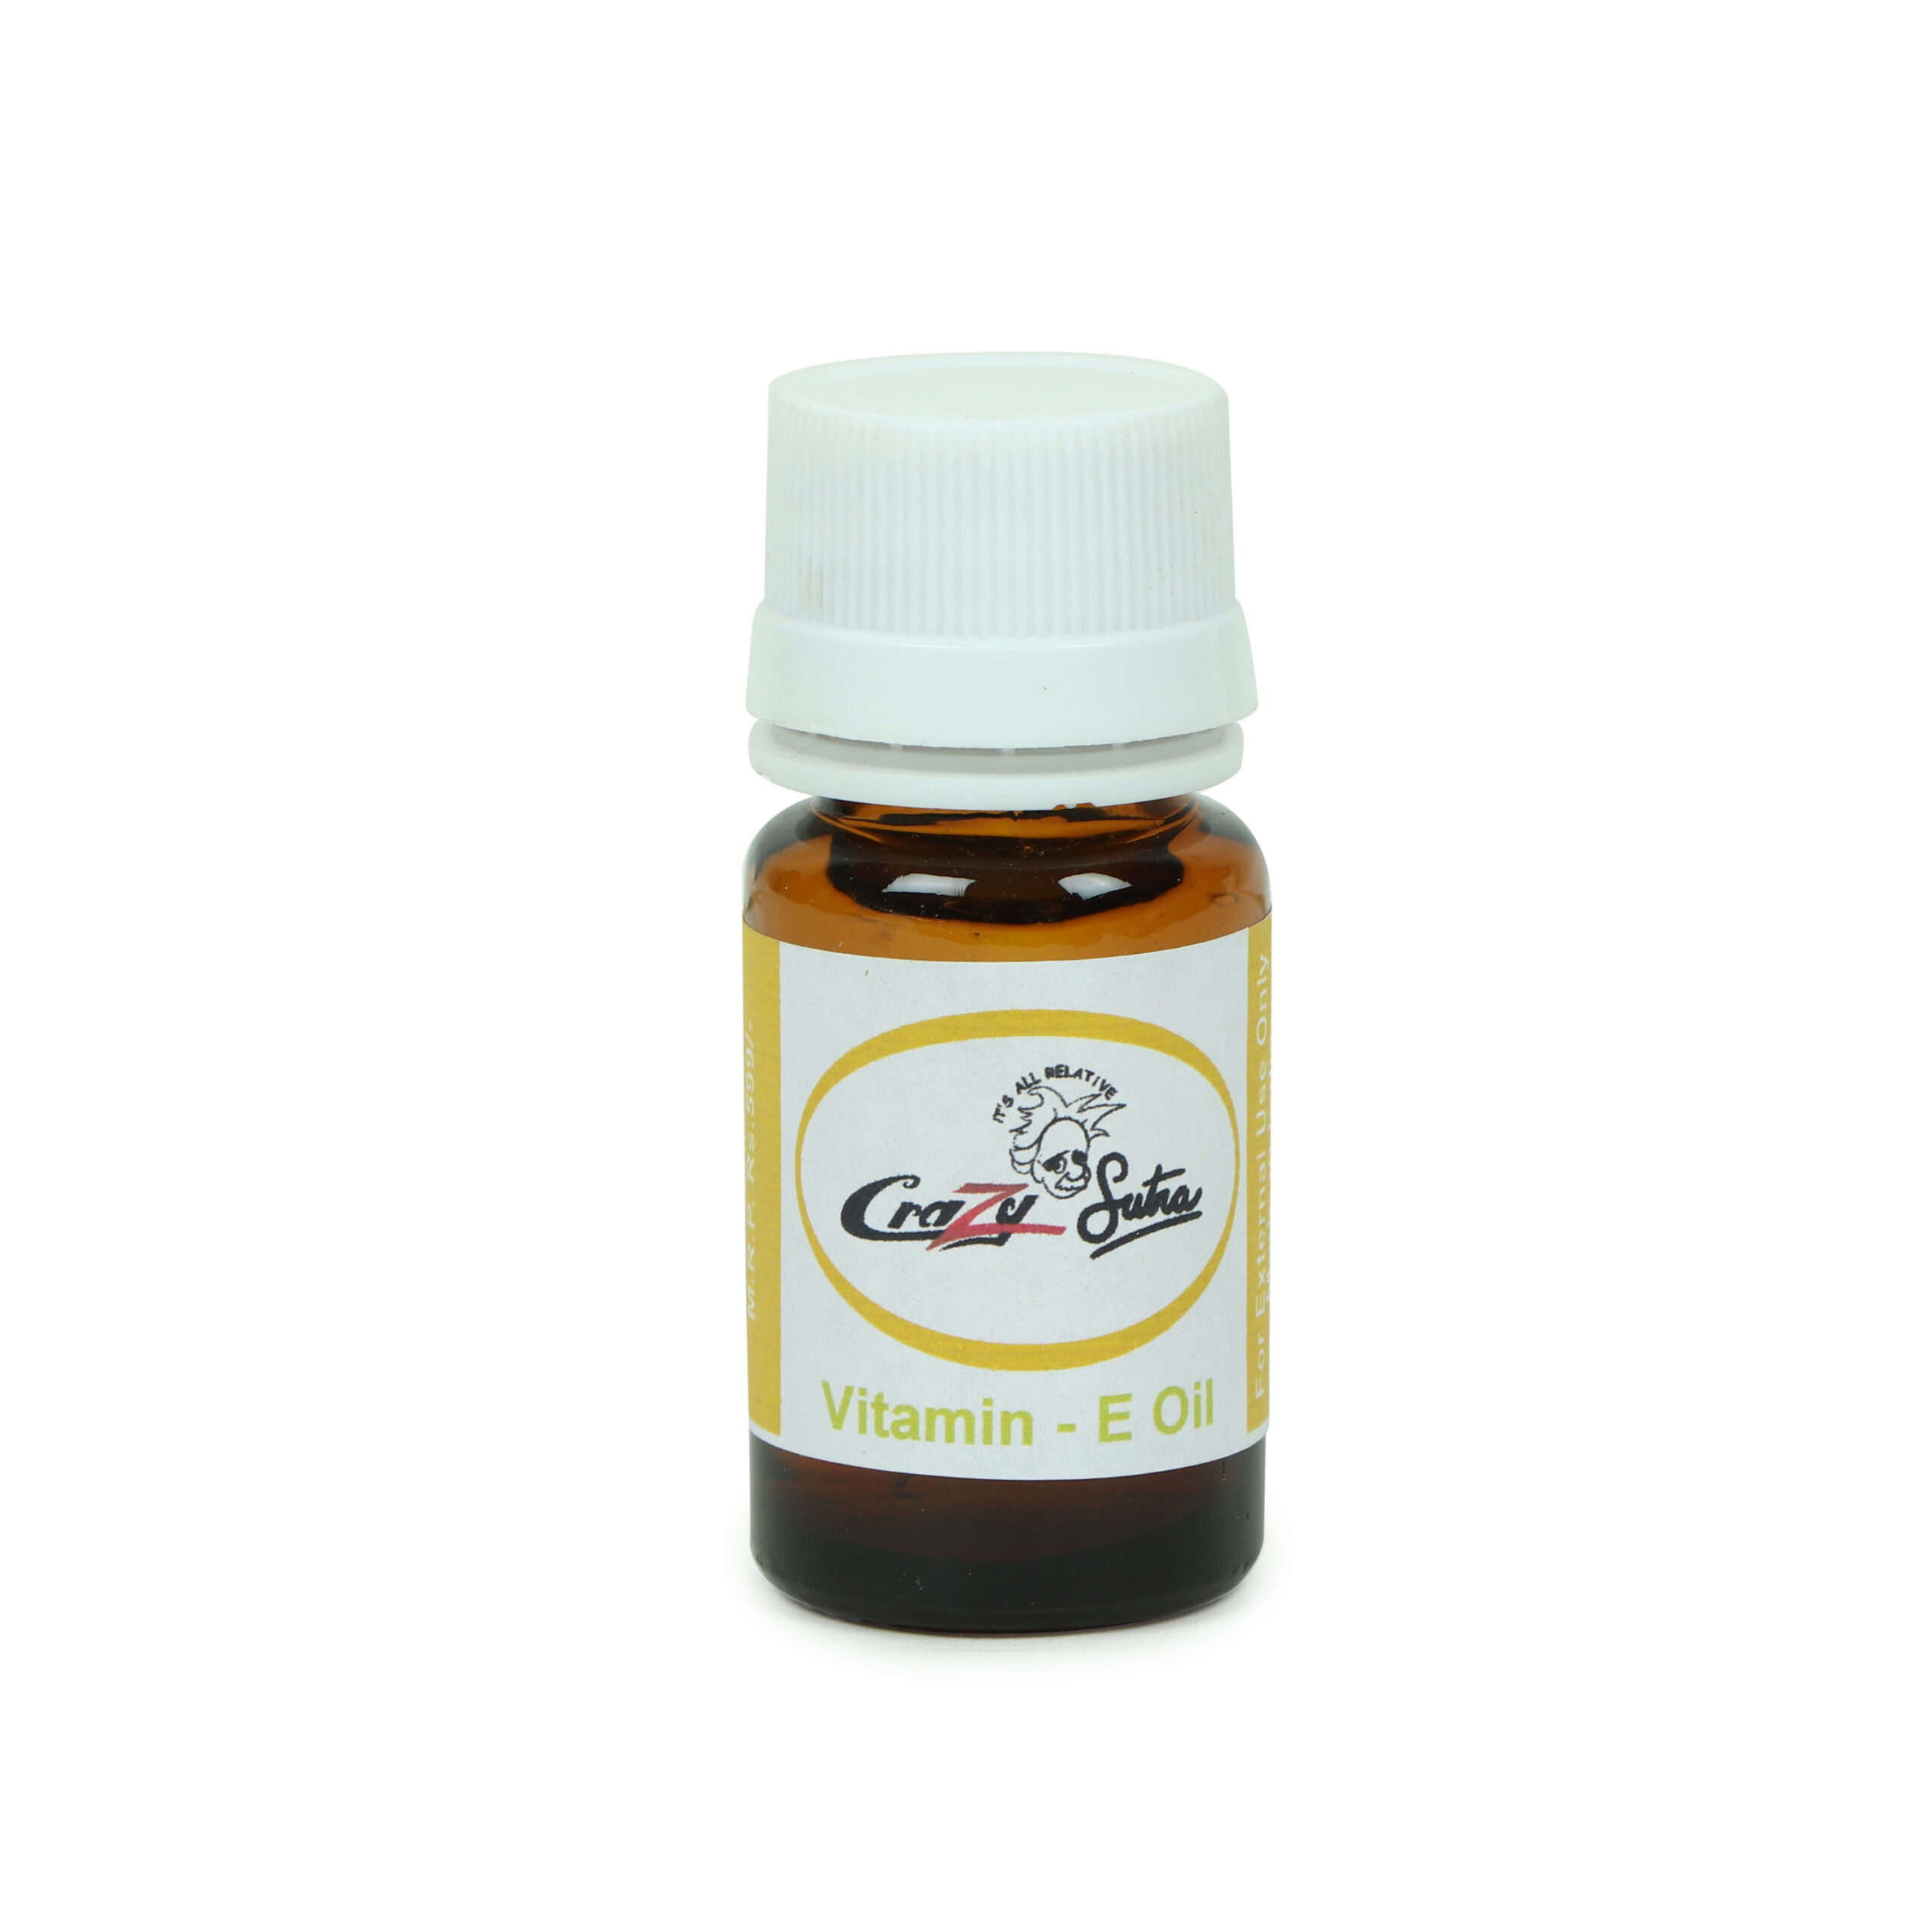 Crazy Sutra Vitamin E Oil (10ml) Use for Soap Making